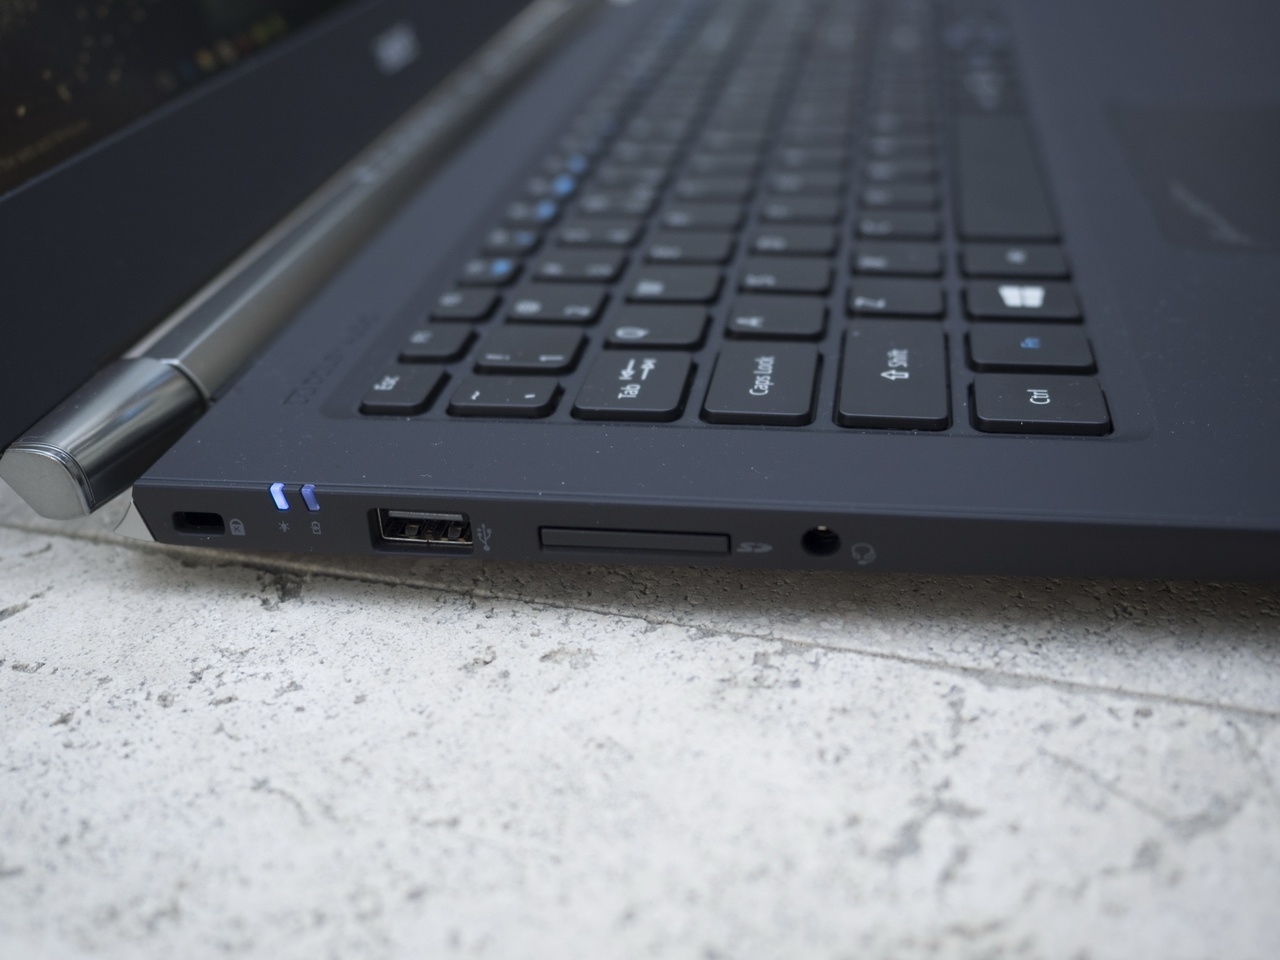 Acer на CES 2016: мониторы, планшеты, игровые ноутбуки и ультрамобильный трансформер - 23